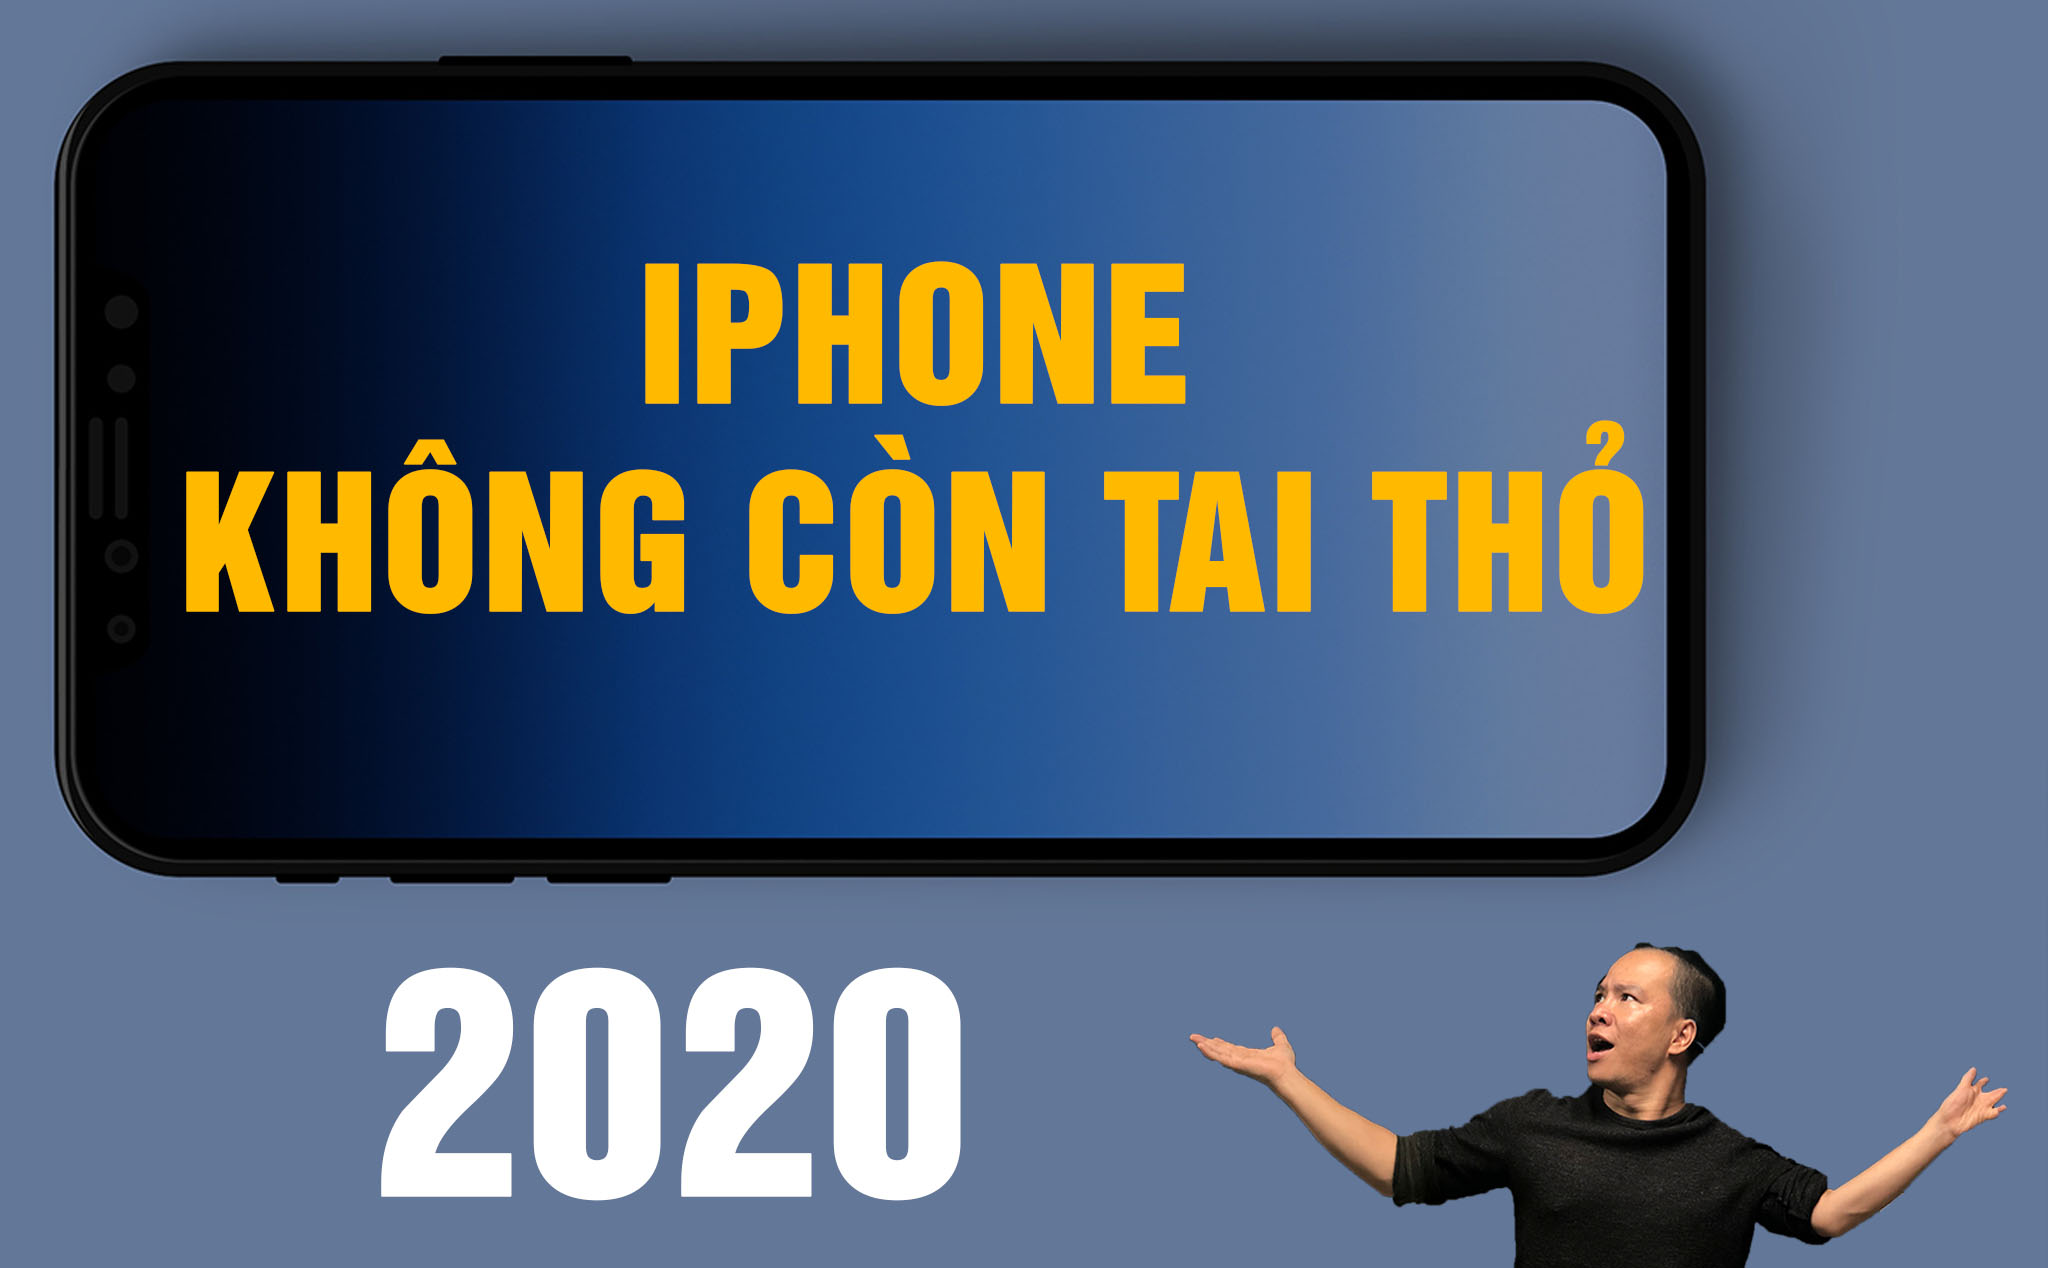 [Video] iPhone 2020 không còn tai thỏ, anh em nghĩ gì?